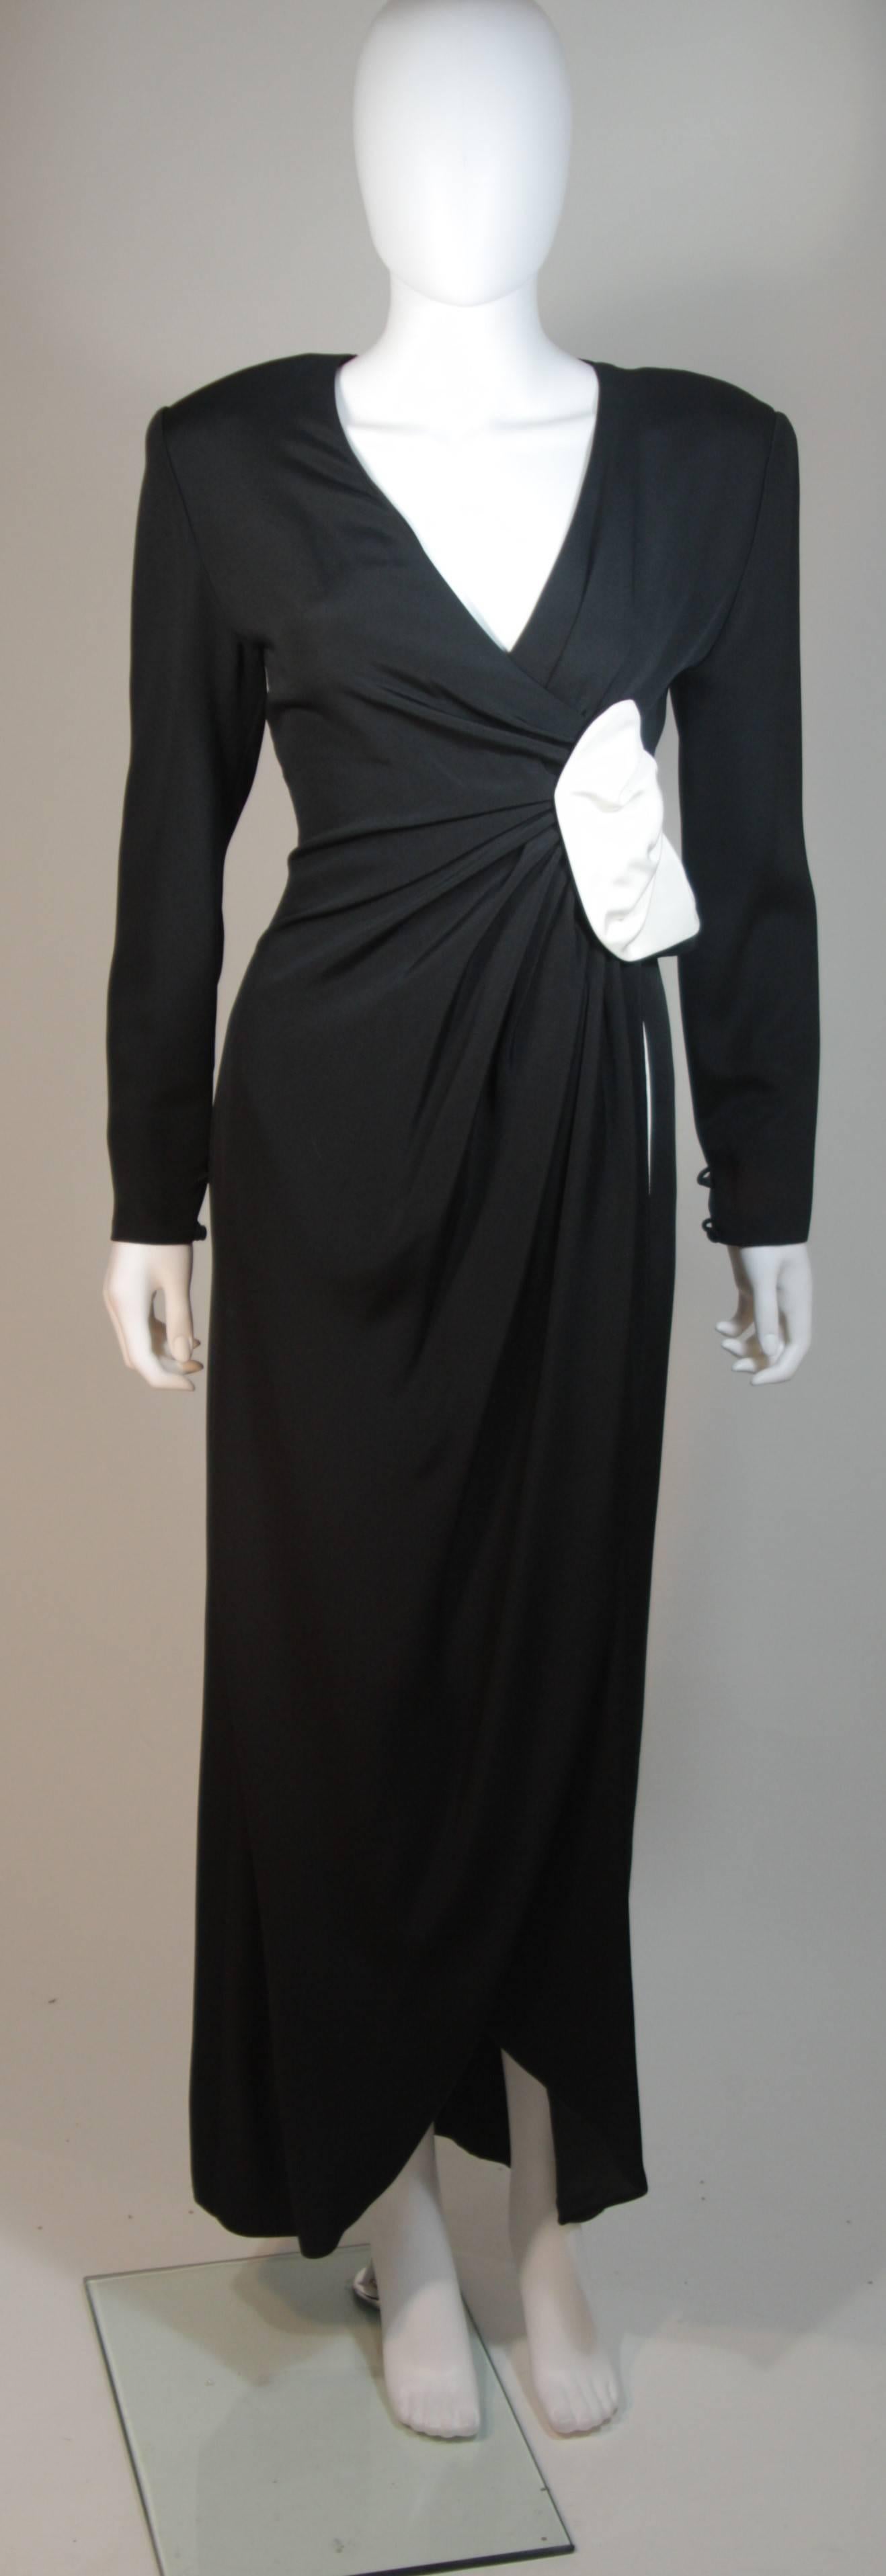 Ce Nolan Miller  La robe est composée de soie noire et blanche. Le détail du drapé est accentué par le contraste saisissant. Le design drapé galbe joliment la taille. La fermeture à glissière se trouve au centre du dos. Circa années 80.  En parfait